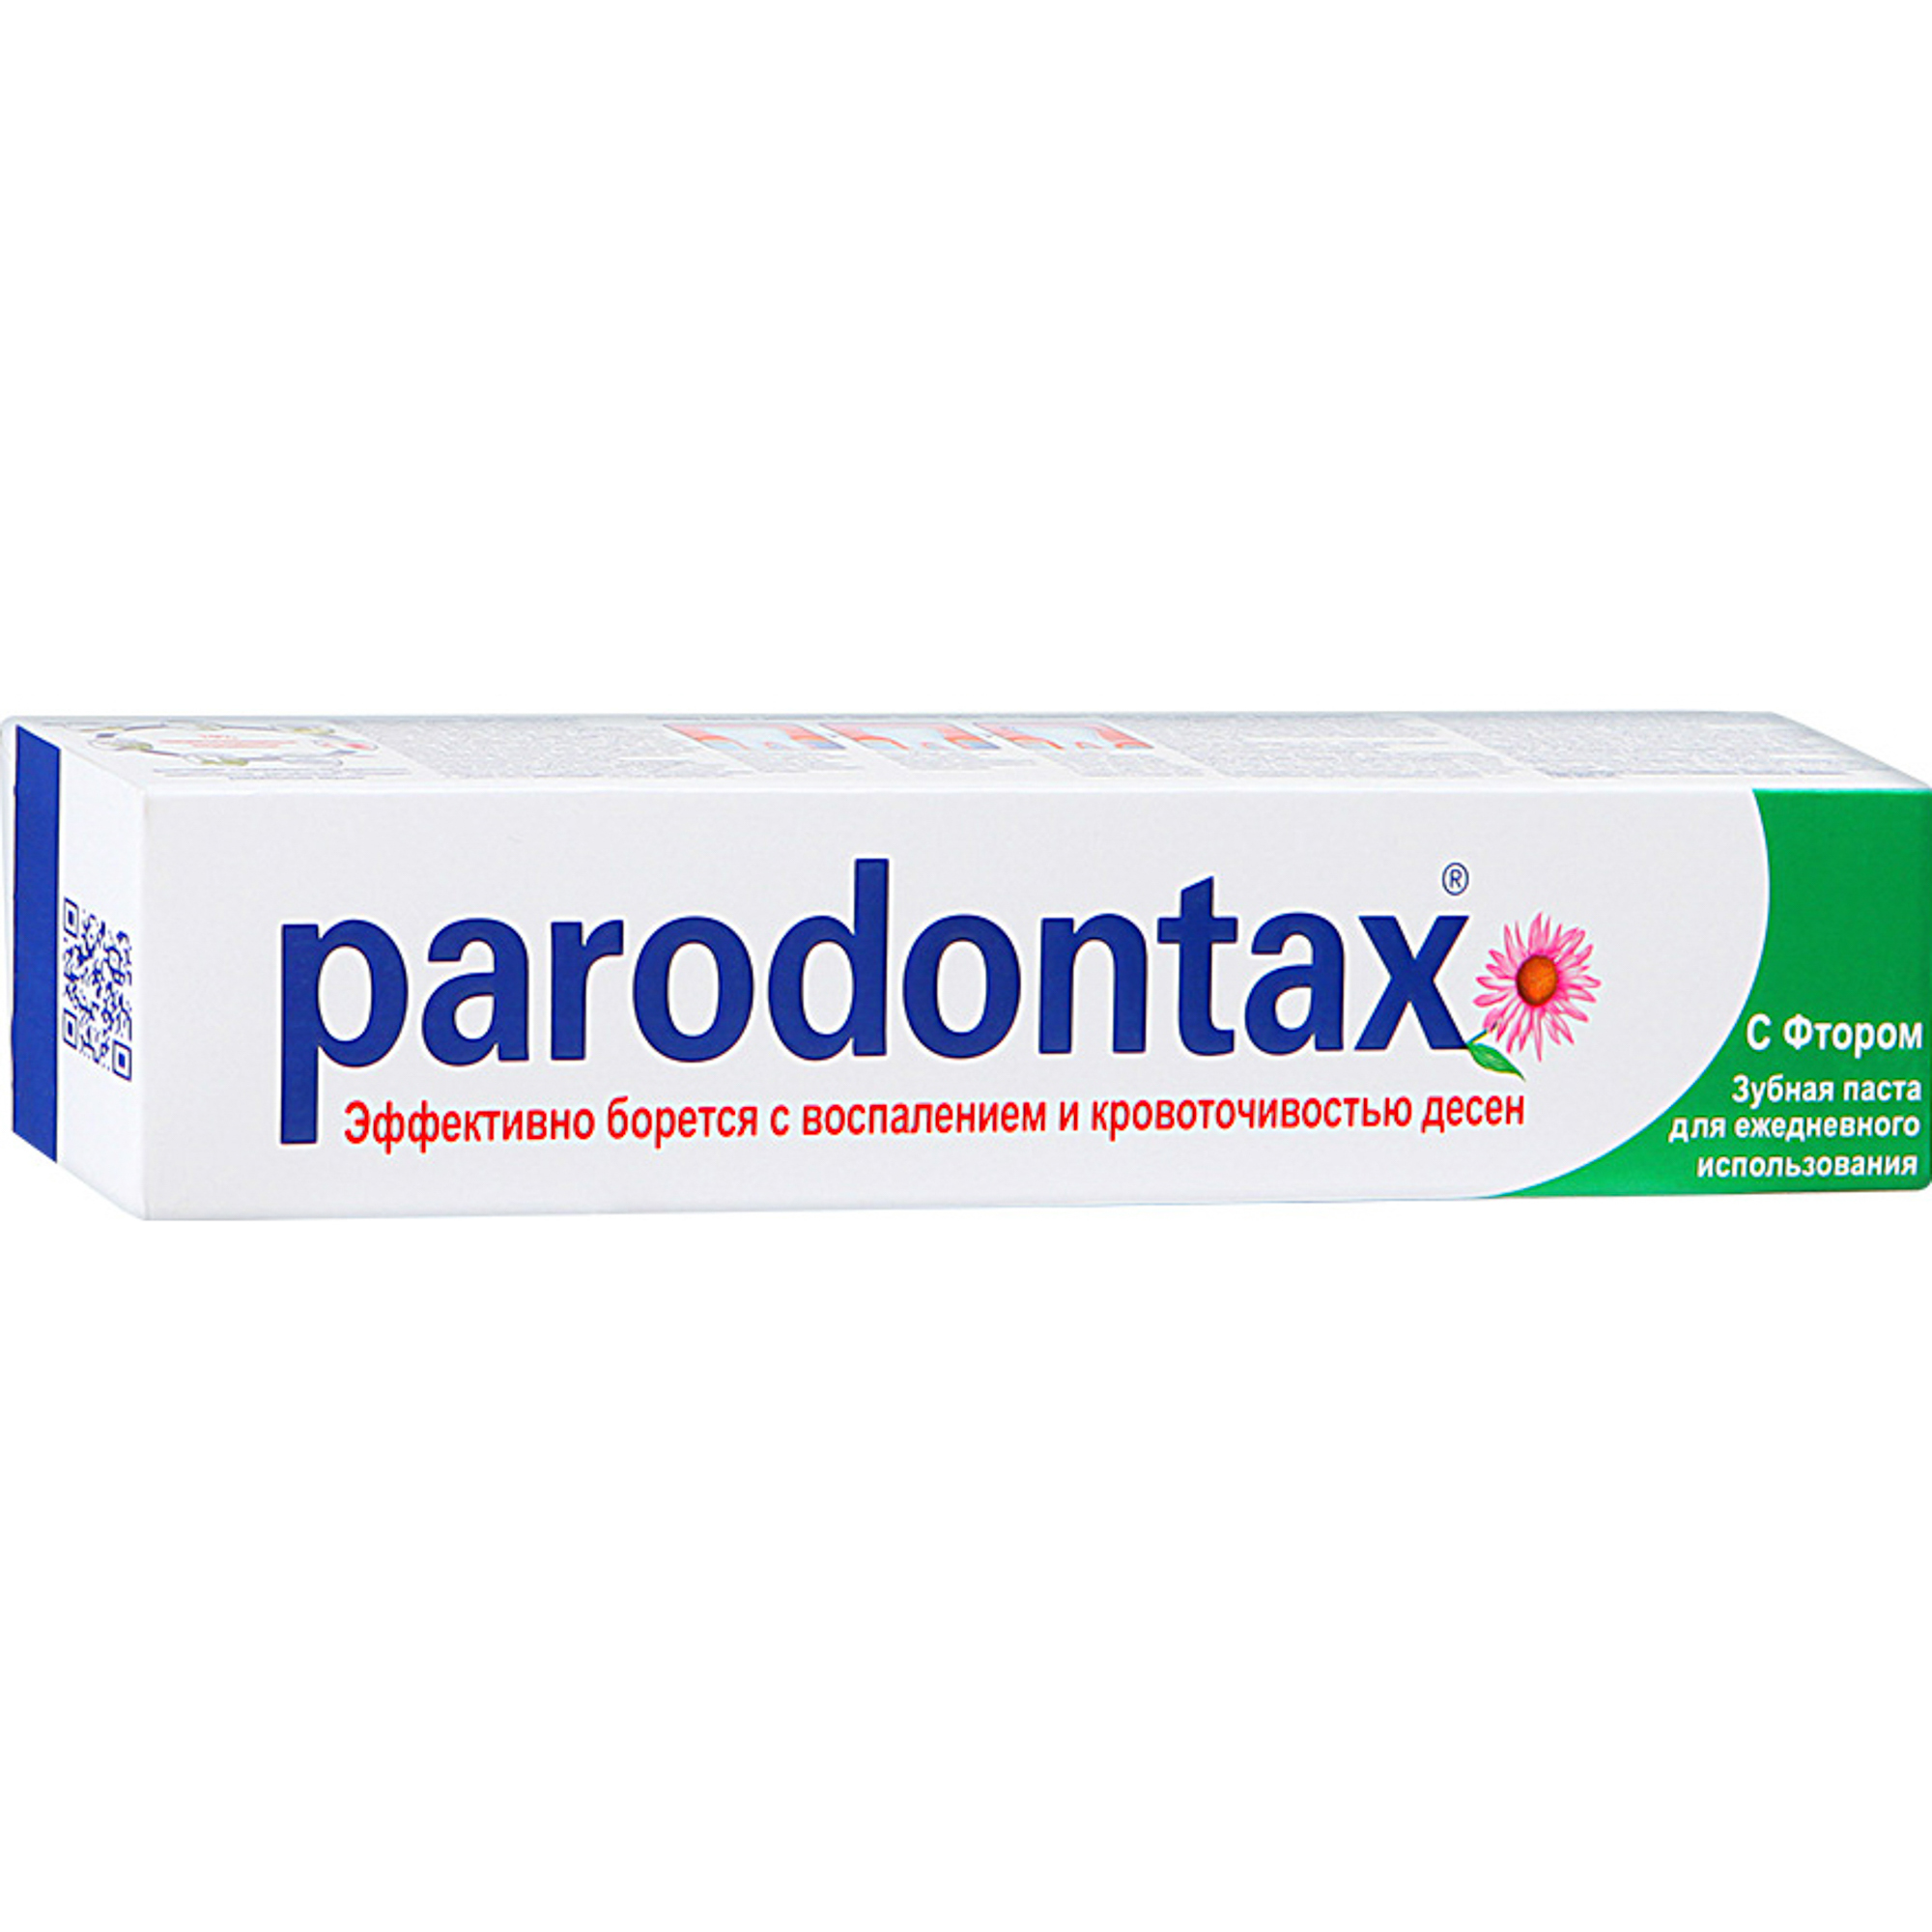 Зубная паста Parodontax С фтором 50 мл зубная паста parodontax комплексная защита с фтором 75 мл